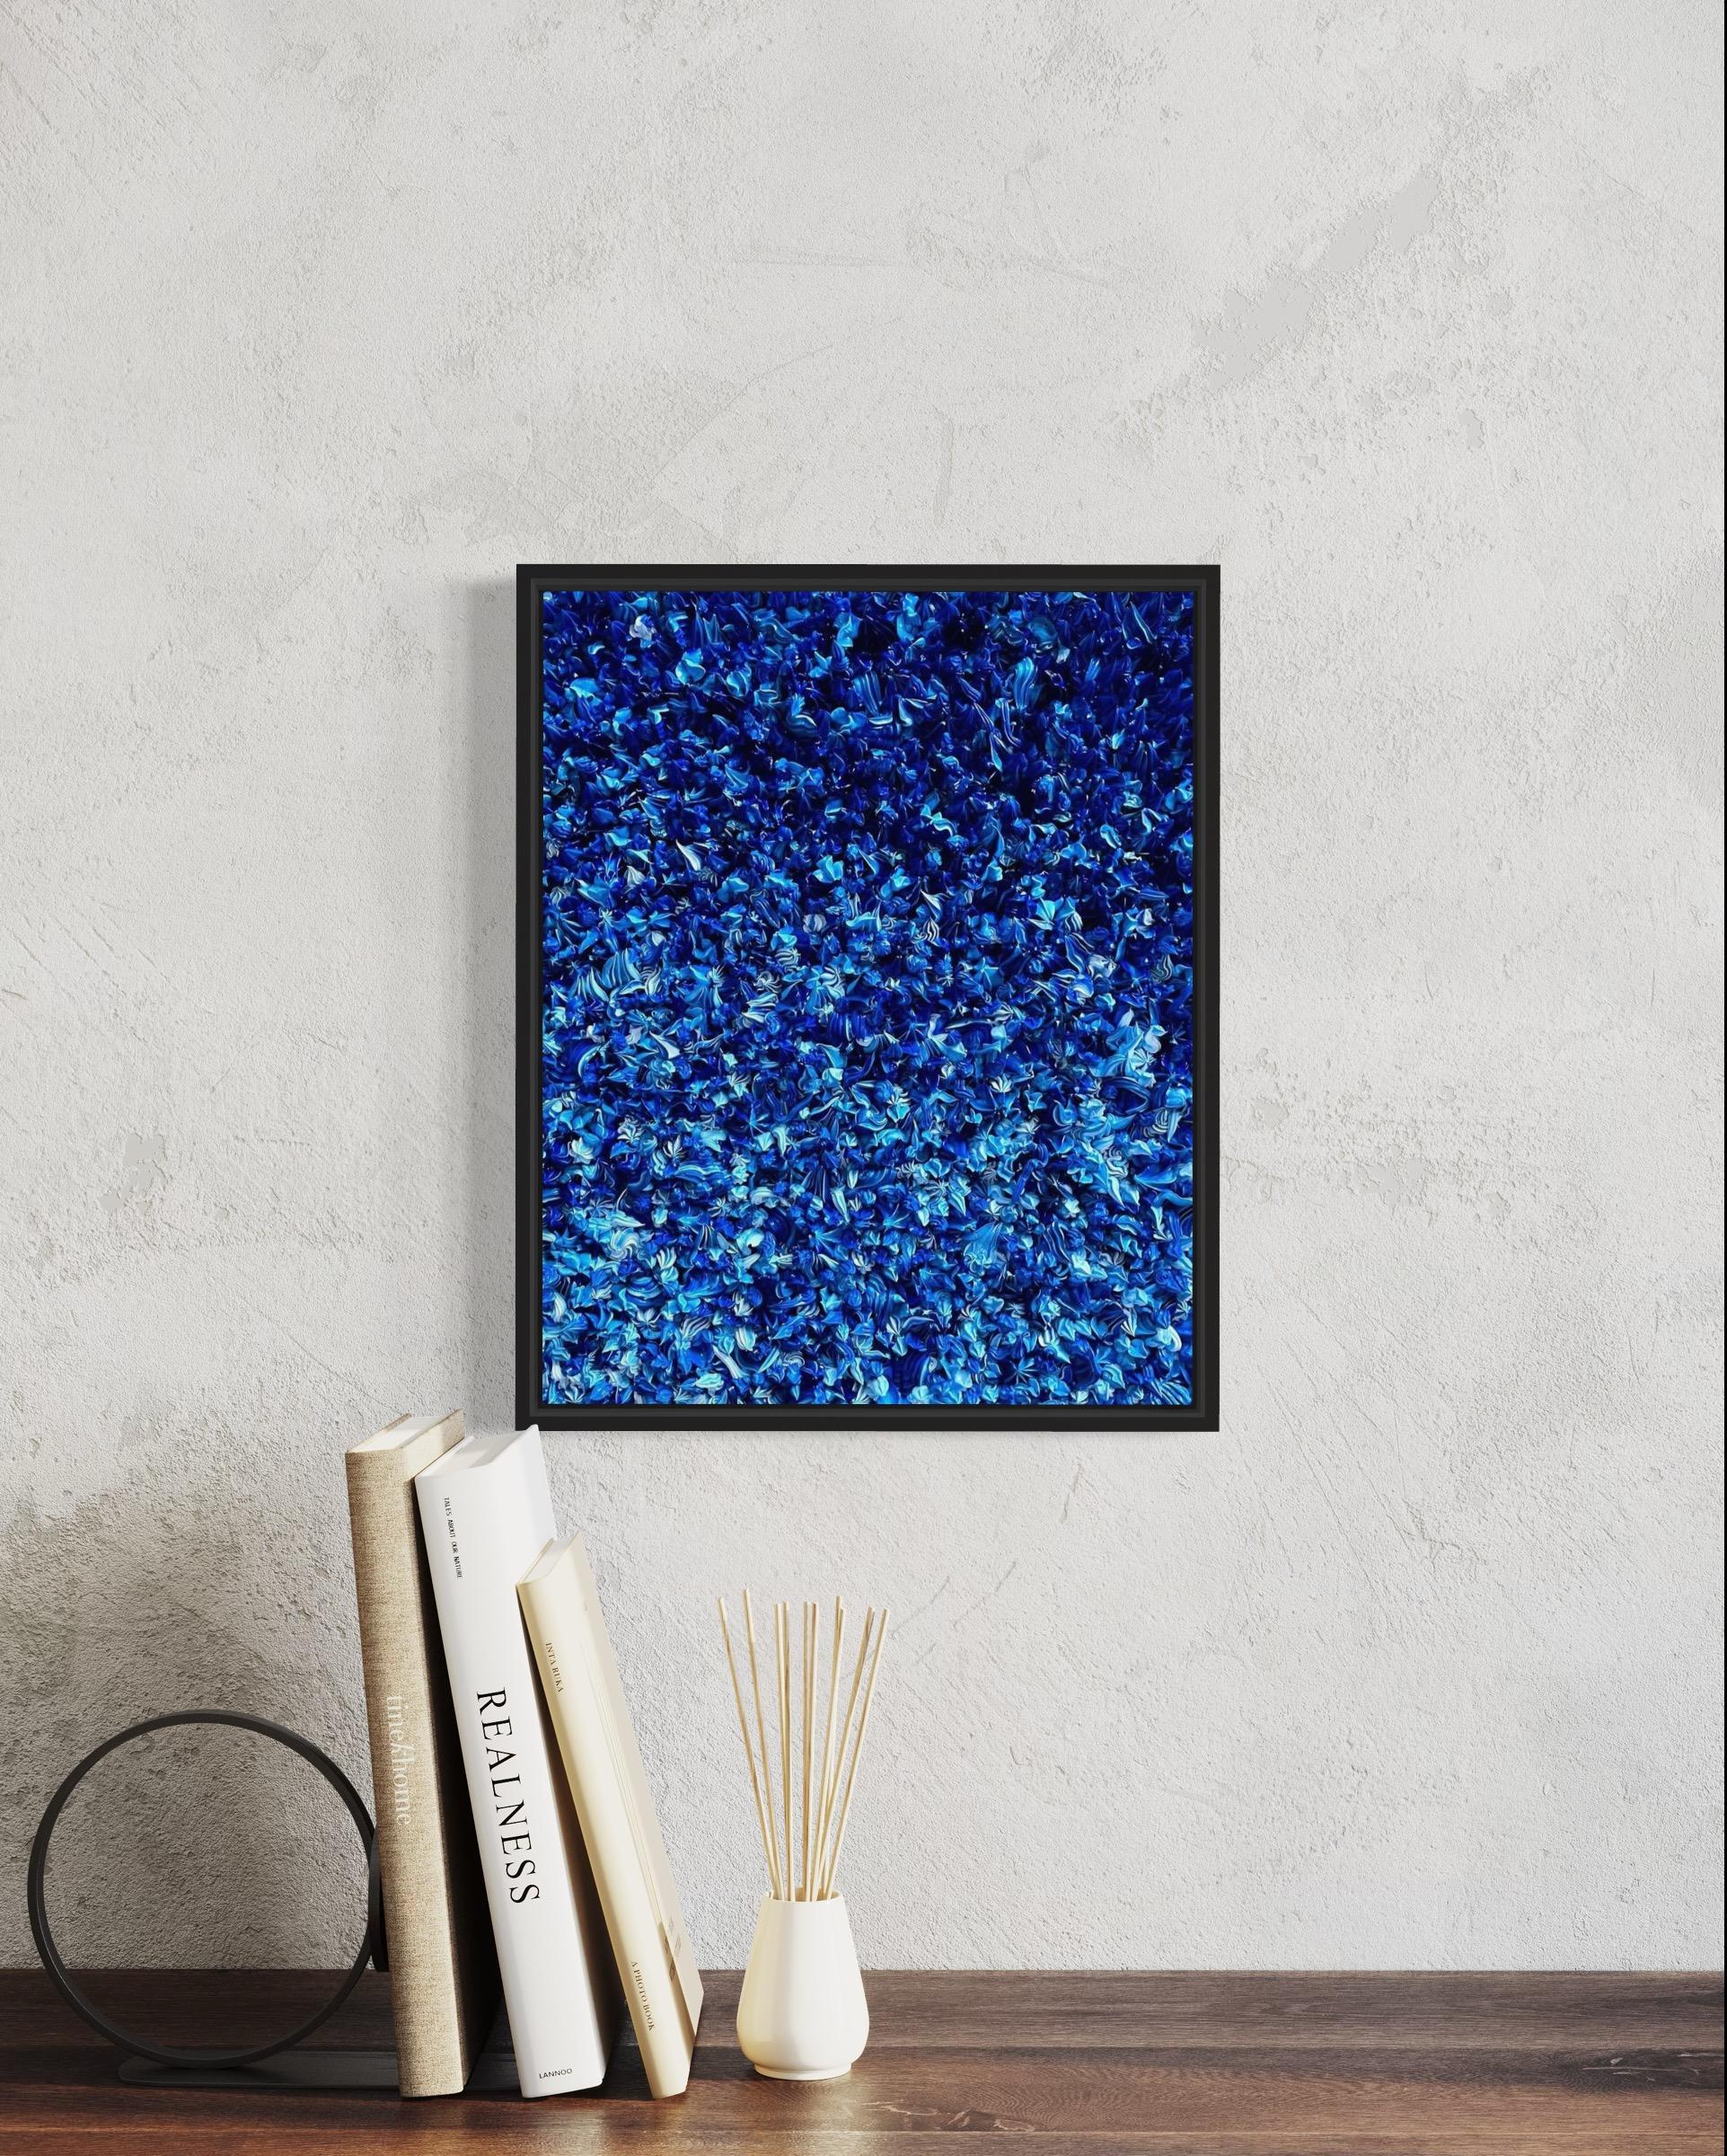 50 nuances de bleu - Pop Art Mixed Media Art par christophe sola